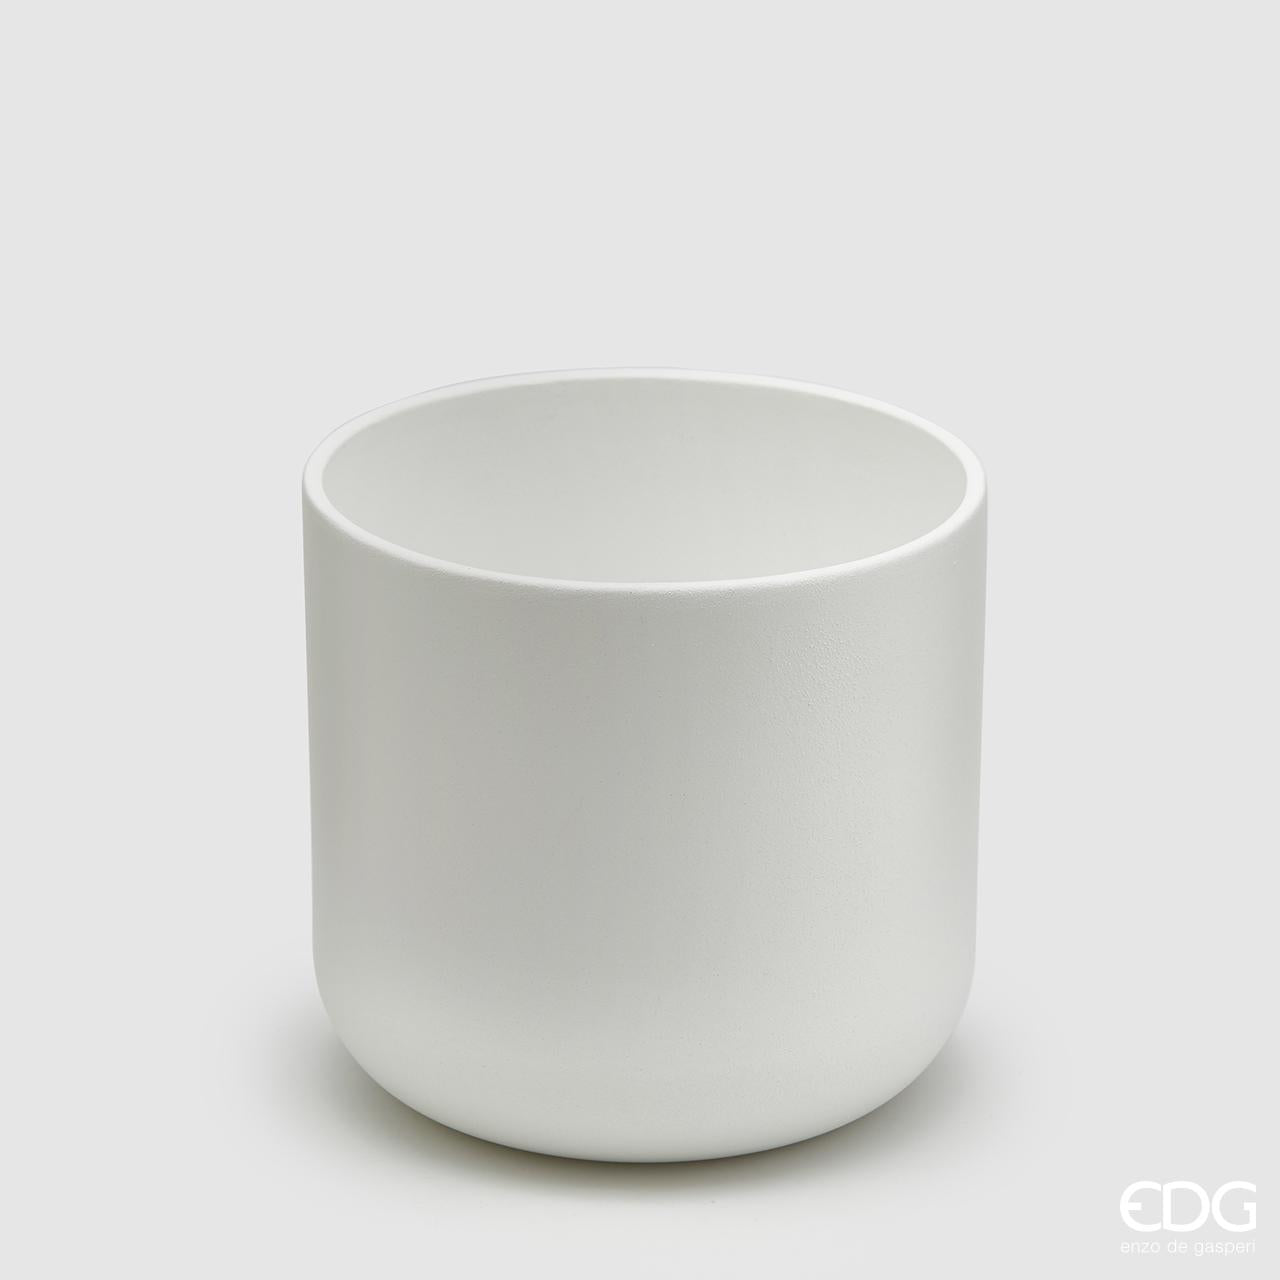 Vaso in ceramica di colore bianco. Dimensioni: cm 15 x 15 h. Selezione di prodotti EDG in negozio e online su tutttochic.it